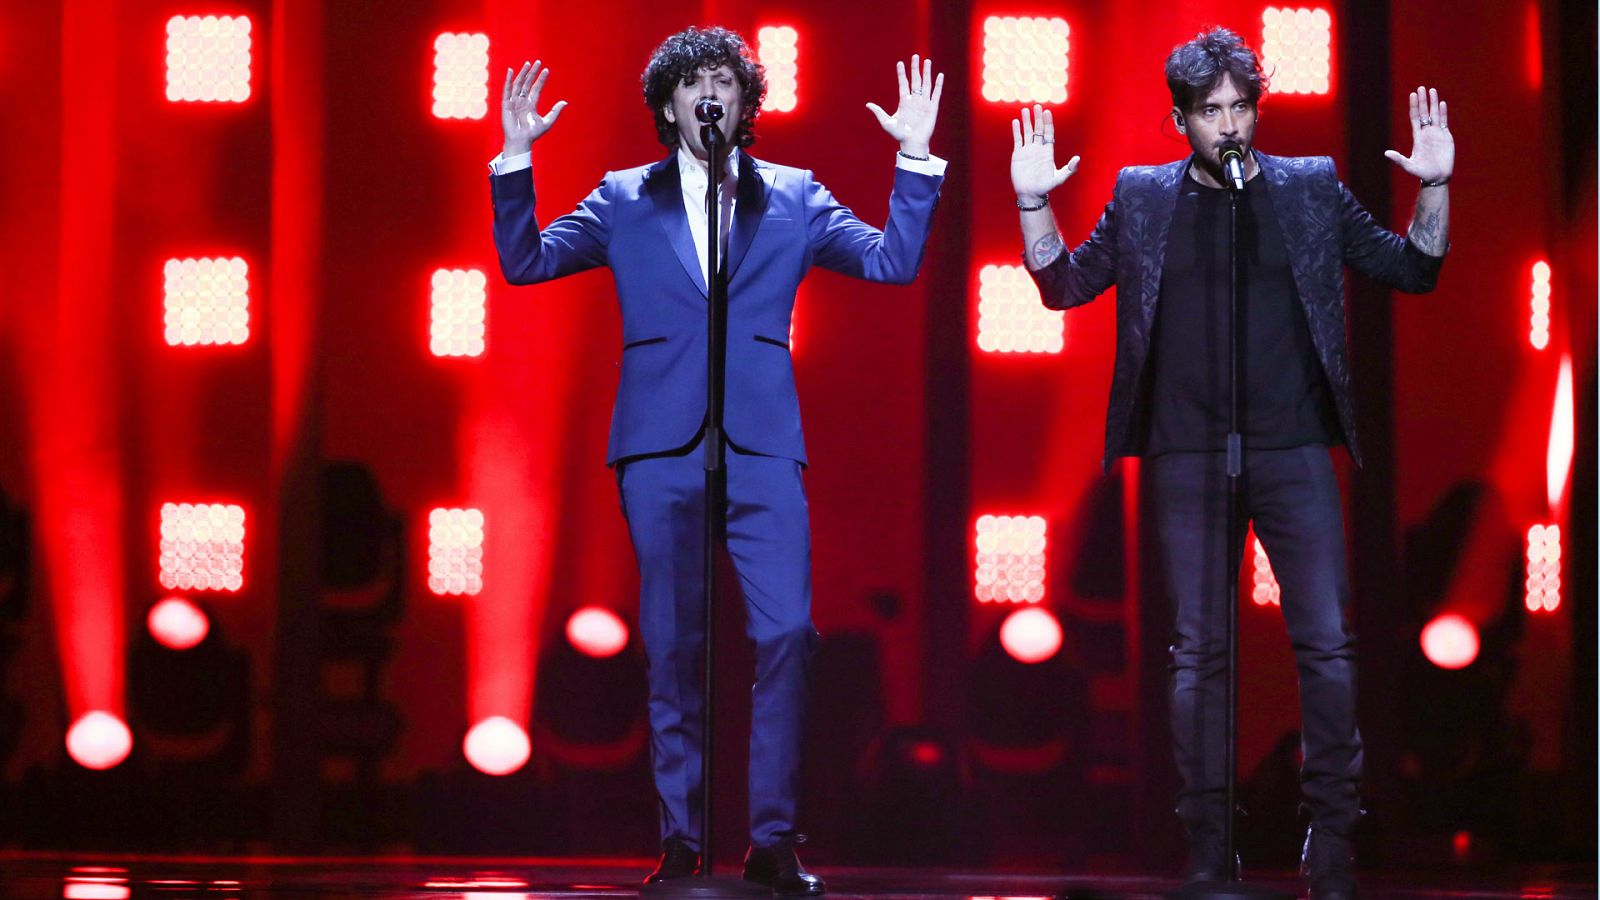 Eurovisión - Italia: Ermal y Fabrizio cantan "Non mi avete fatto niente" en la final de Eurovisión 2018 